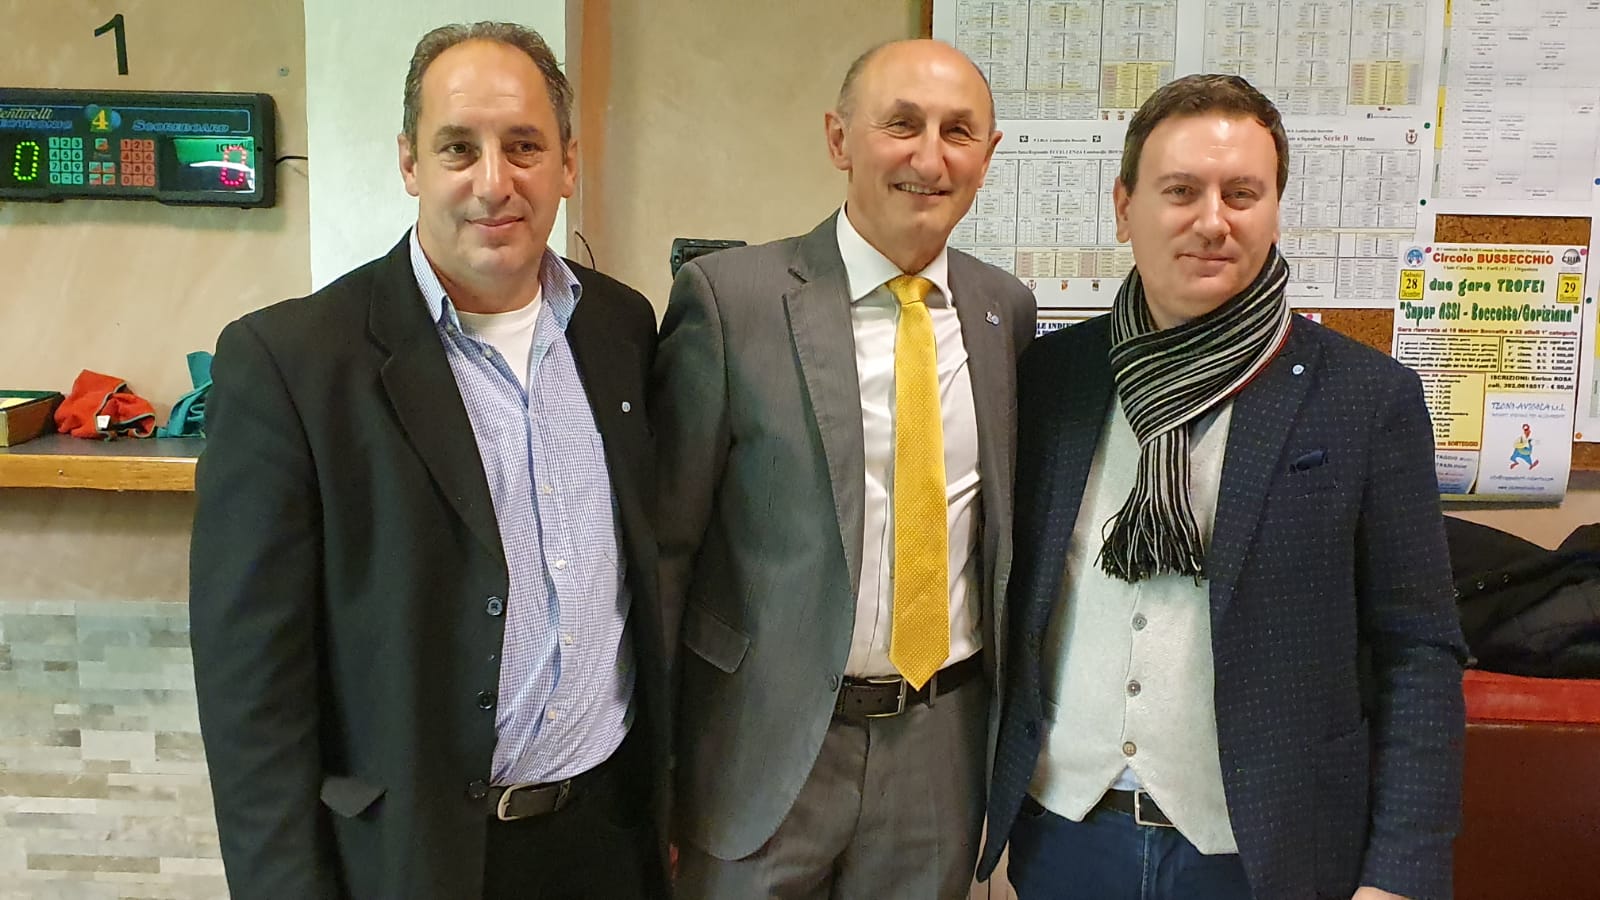 Marco Costantini, Loris De Cesari e Stefano Gibertoni